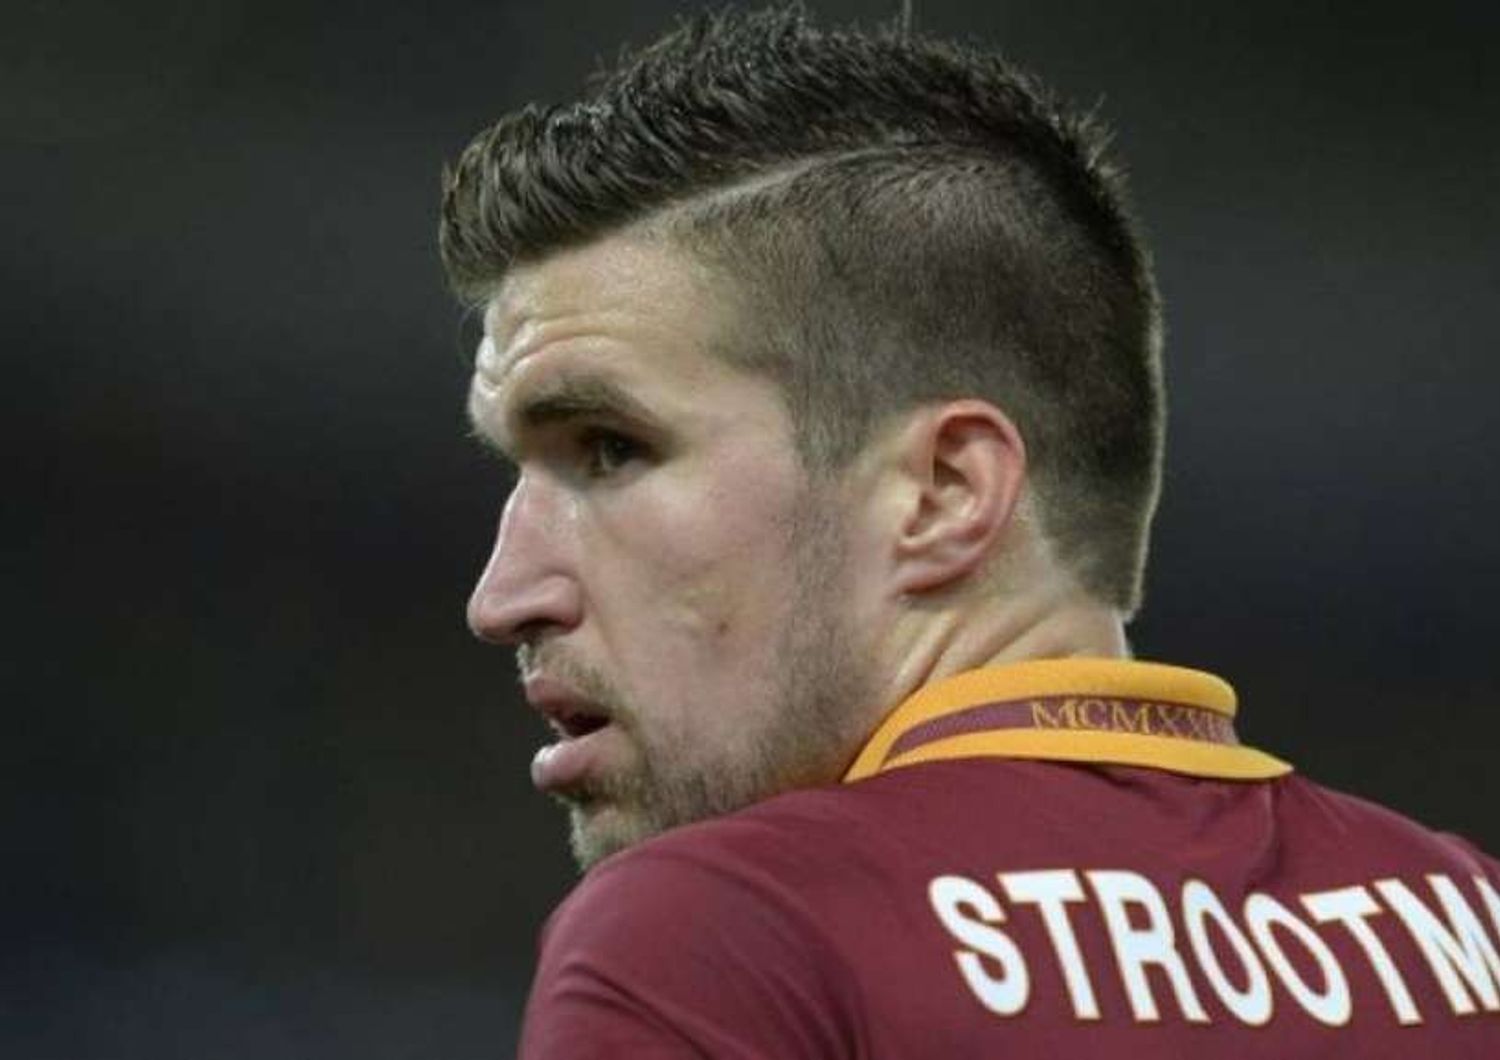 Calcio: al via raduno della Roma, Strootman in rosa "test positivi"